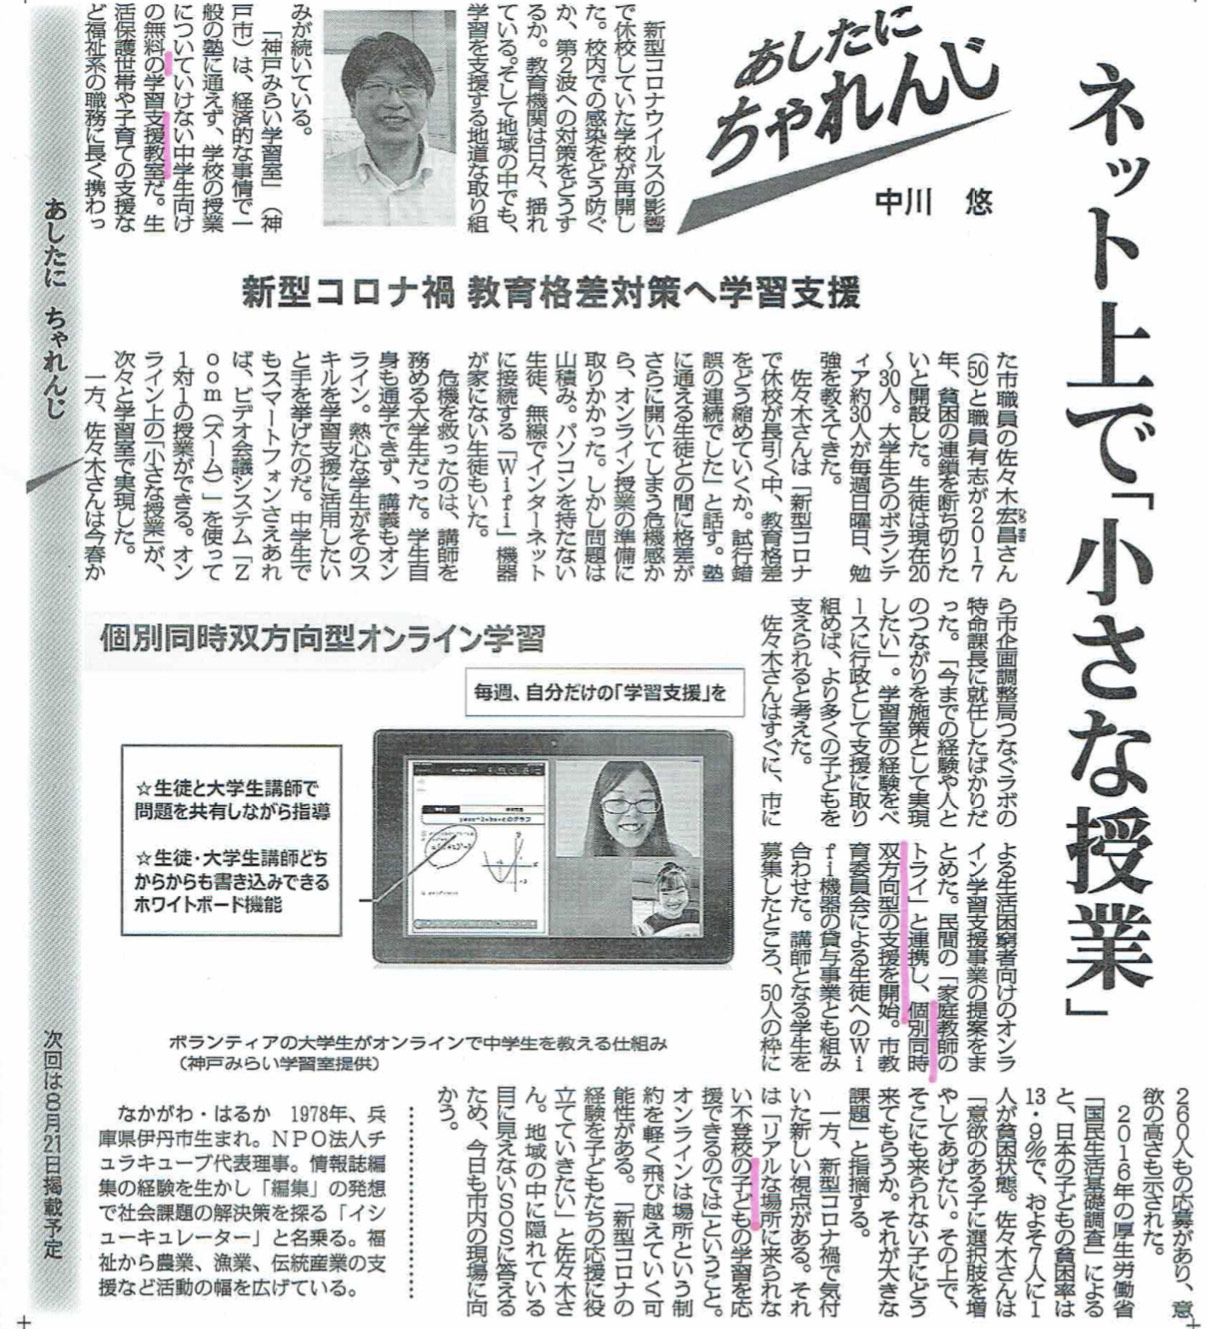 毎日新聞「あしたに、ちゃれんじ」は、「神戸みらい学習室」を取材